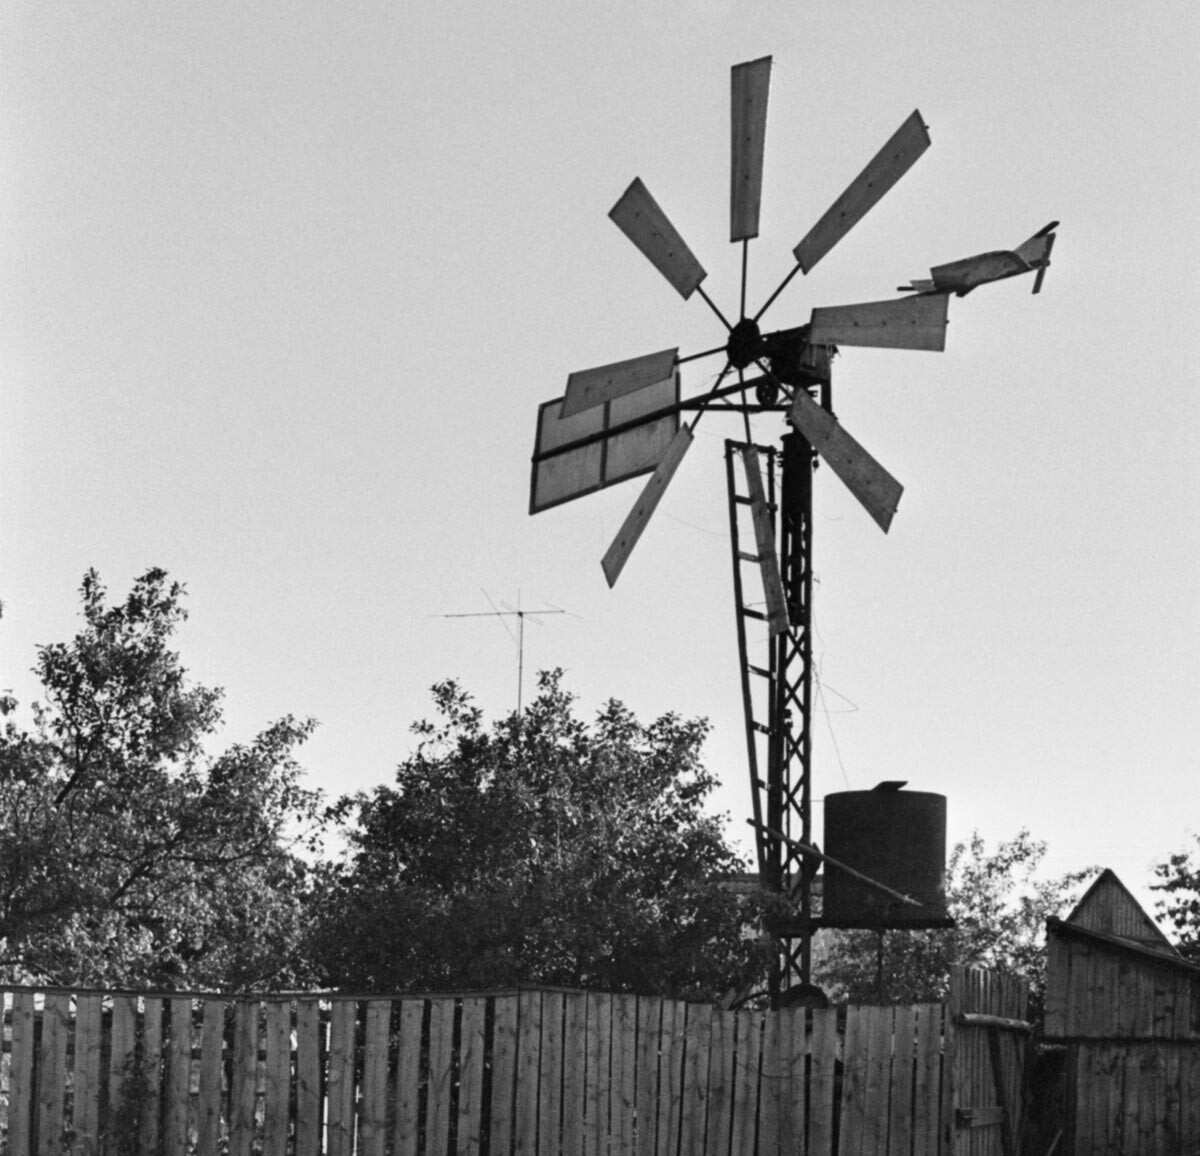 Брјанск, 1 јули 1994 година. Ветерна турбина конструирана од Евгениј Василевич Шилин.

